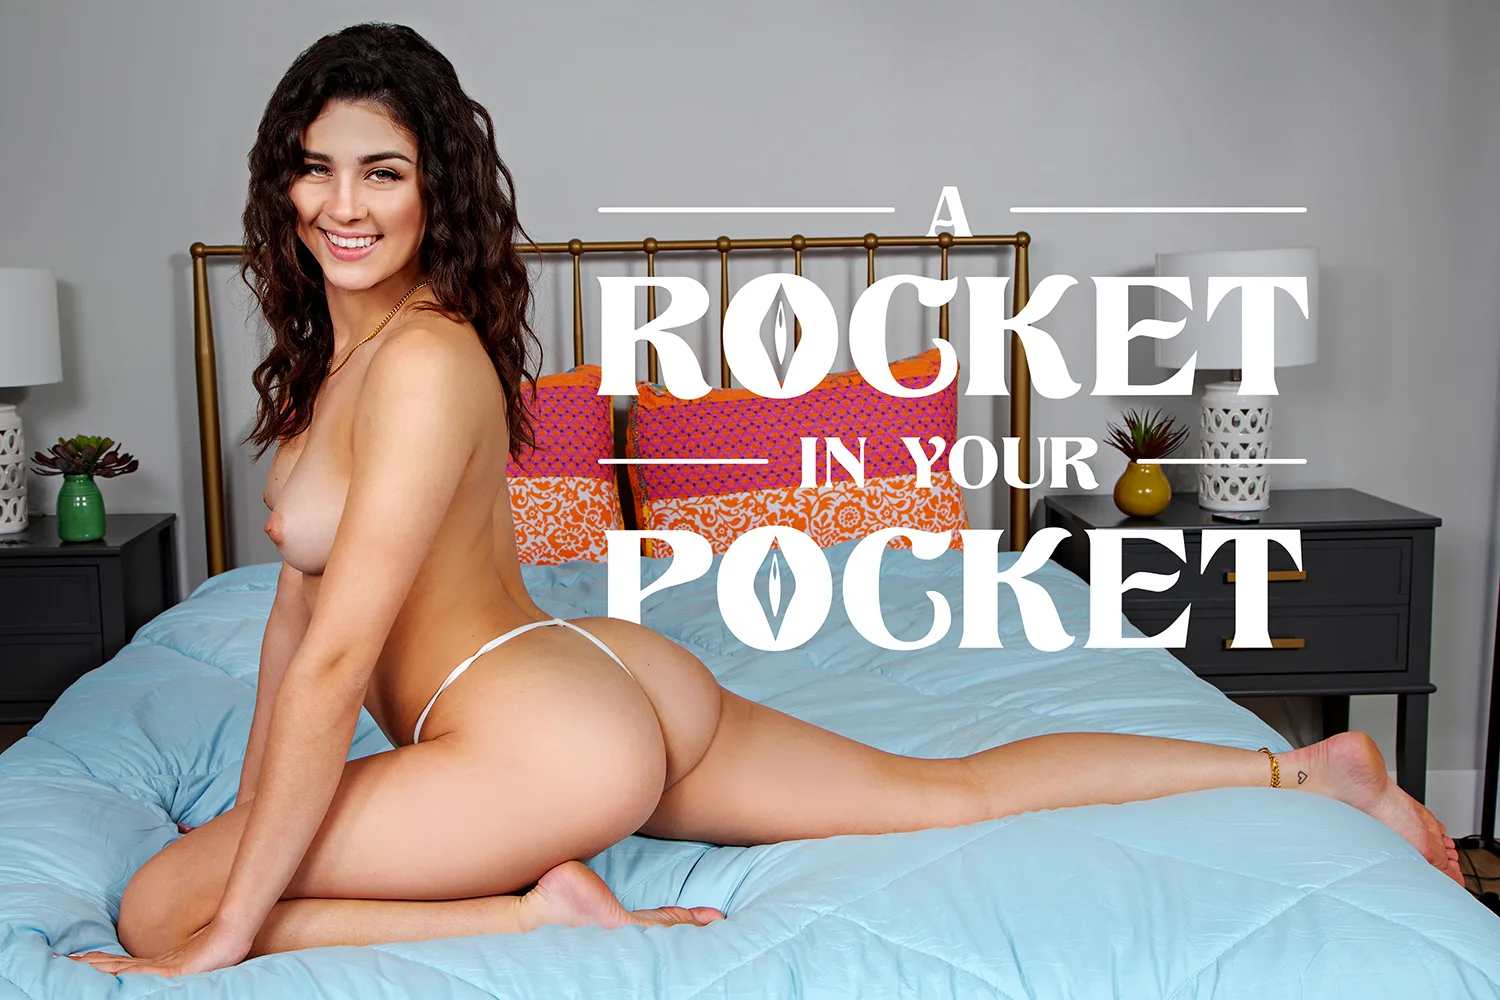 [2020-12-12] A Rocket In Your Pocket - BaDoinkVR